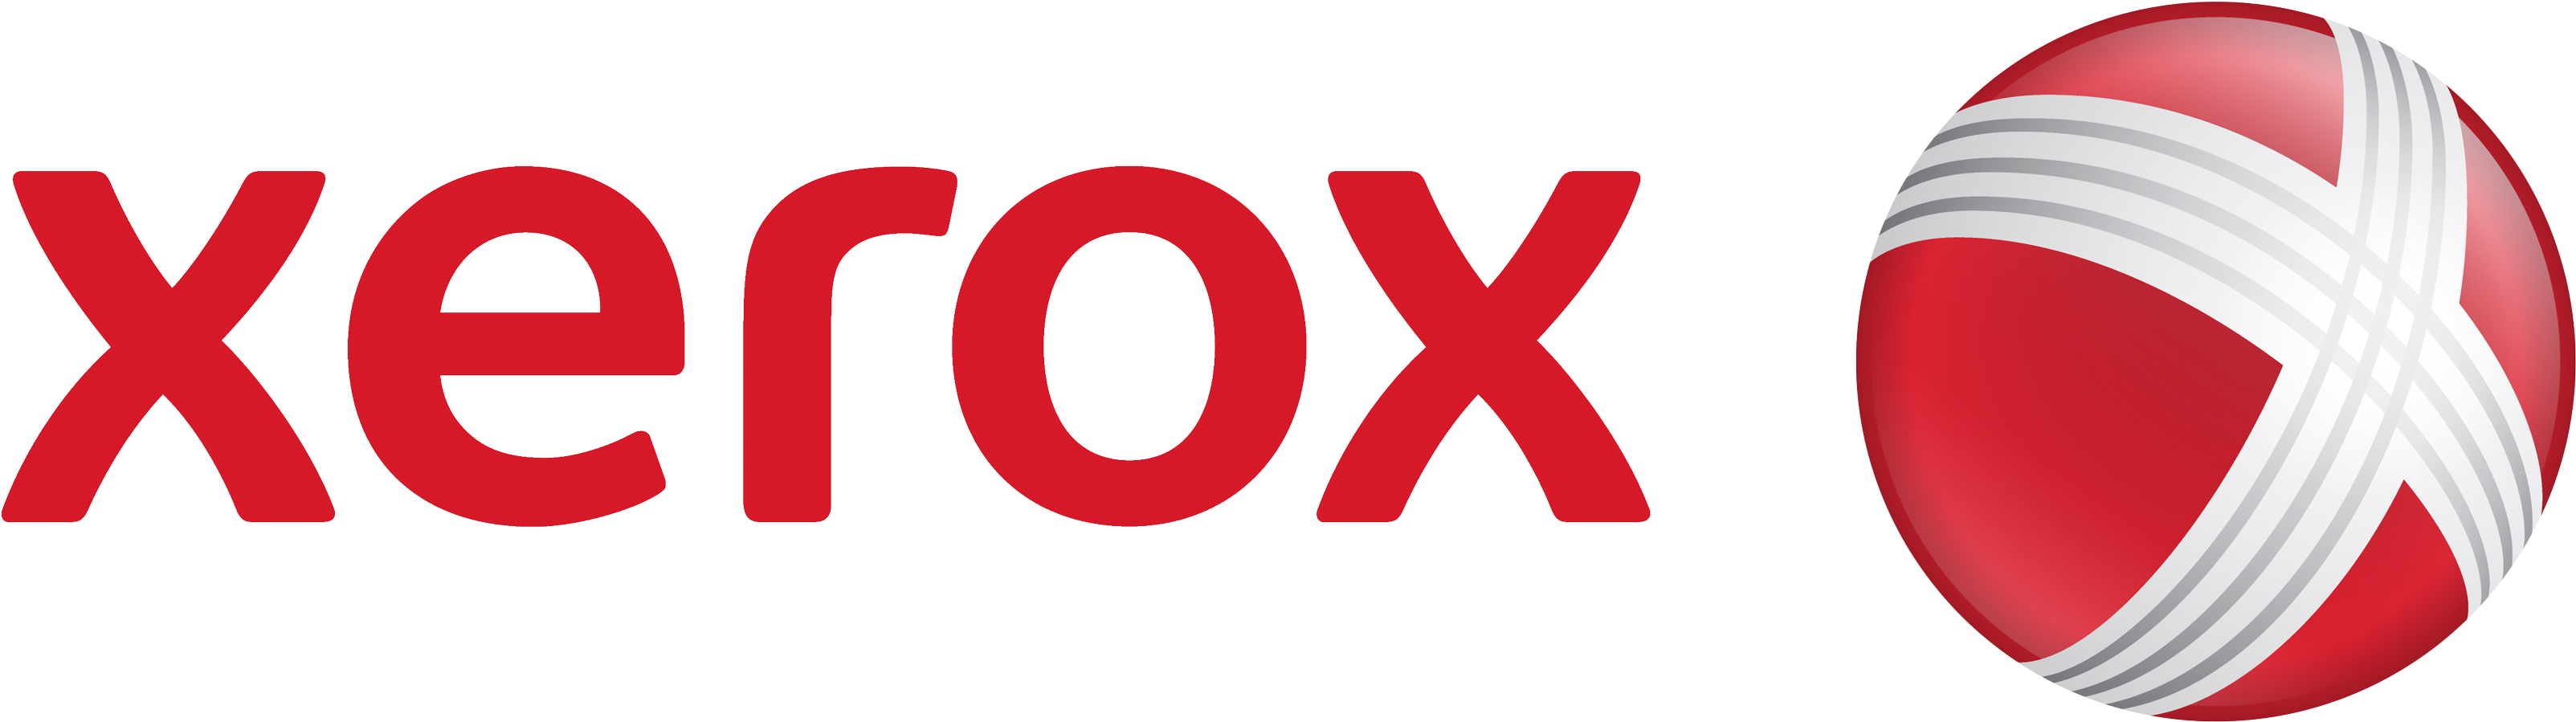 Xerox Logo Png Image - Xerox Logo Png Clipart (3500x1101), Png Download